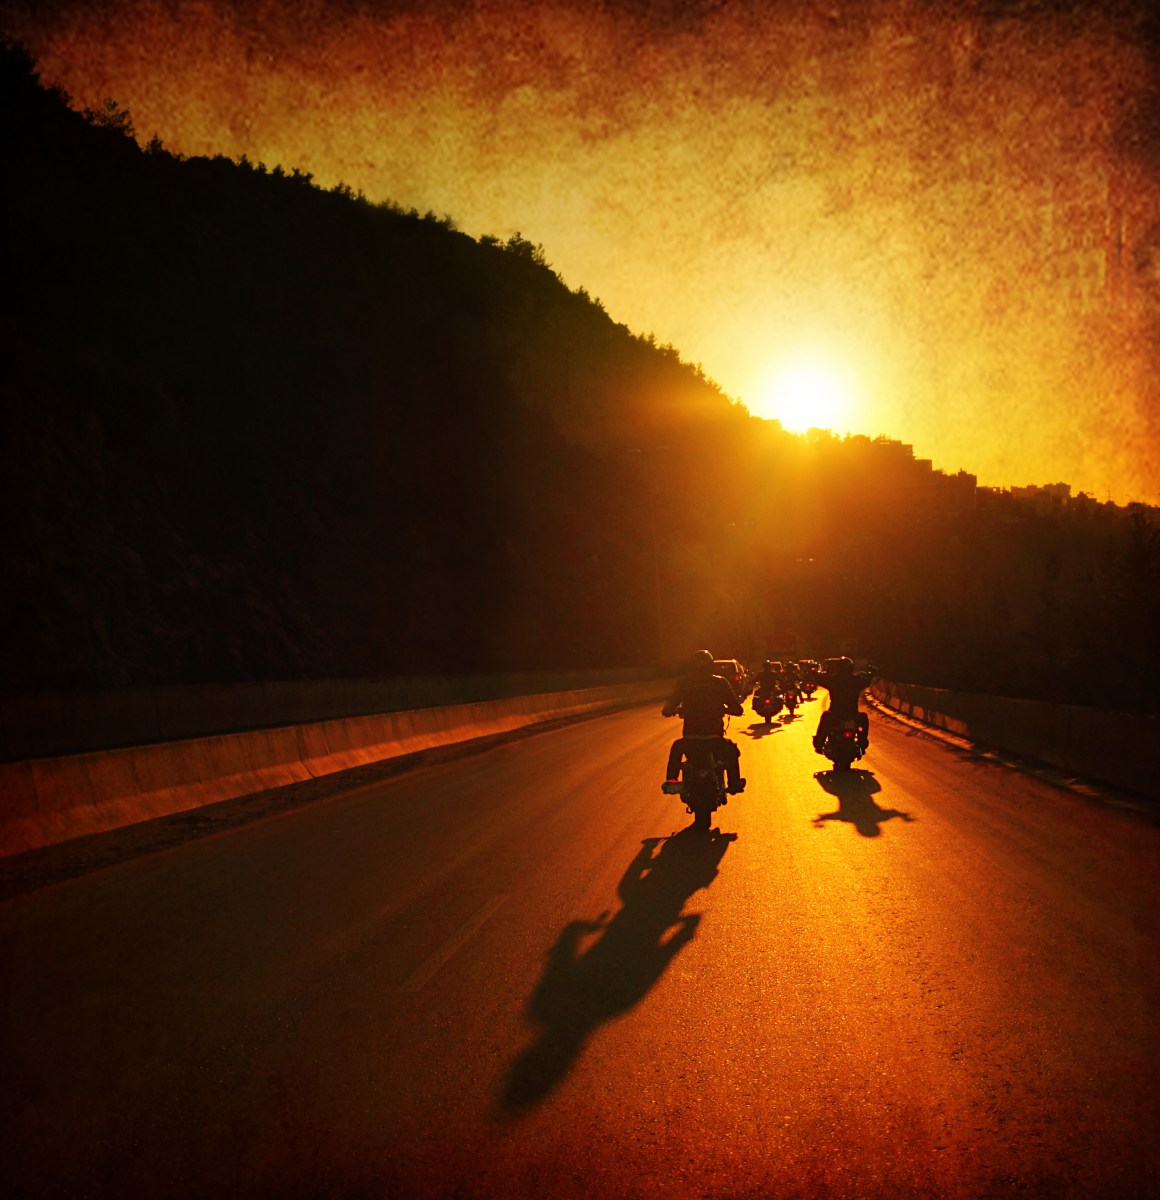 Luces y sombras: las 5 mejores y las 5 peores motos de Harley Davidson